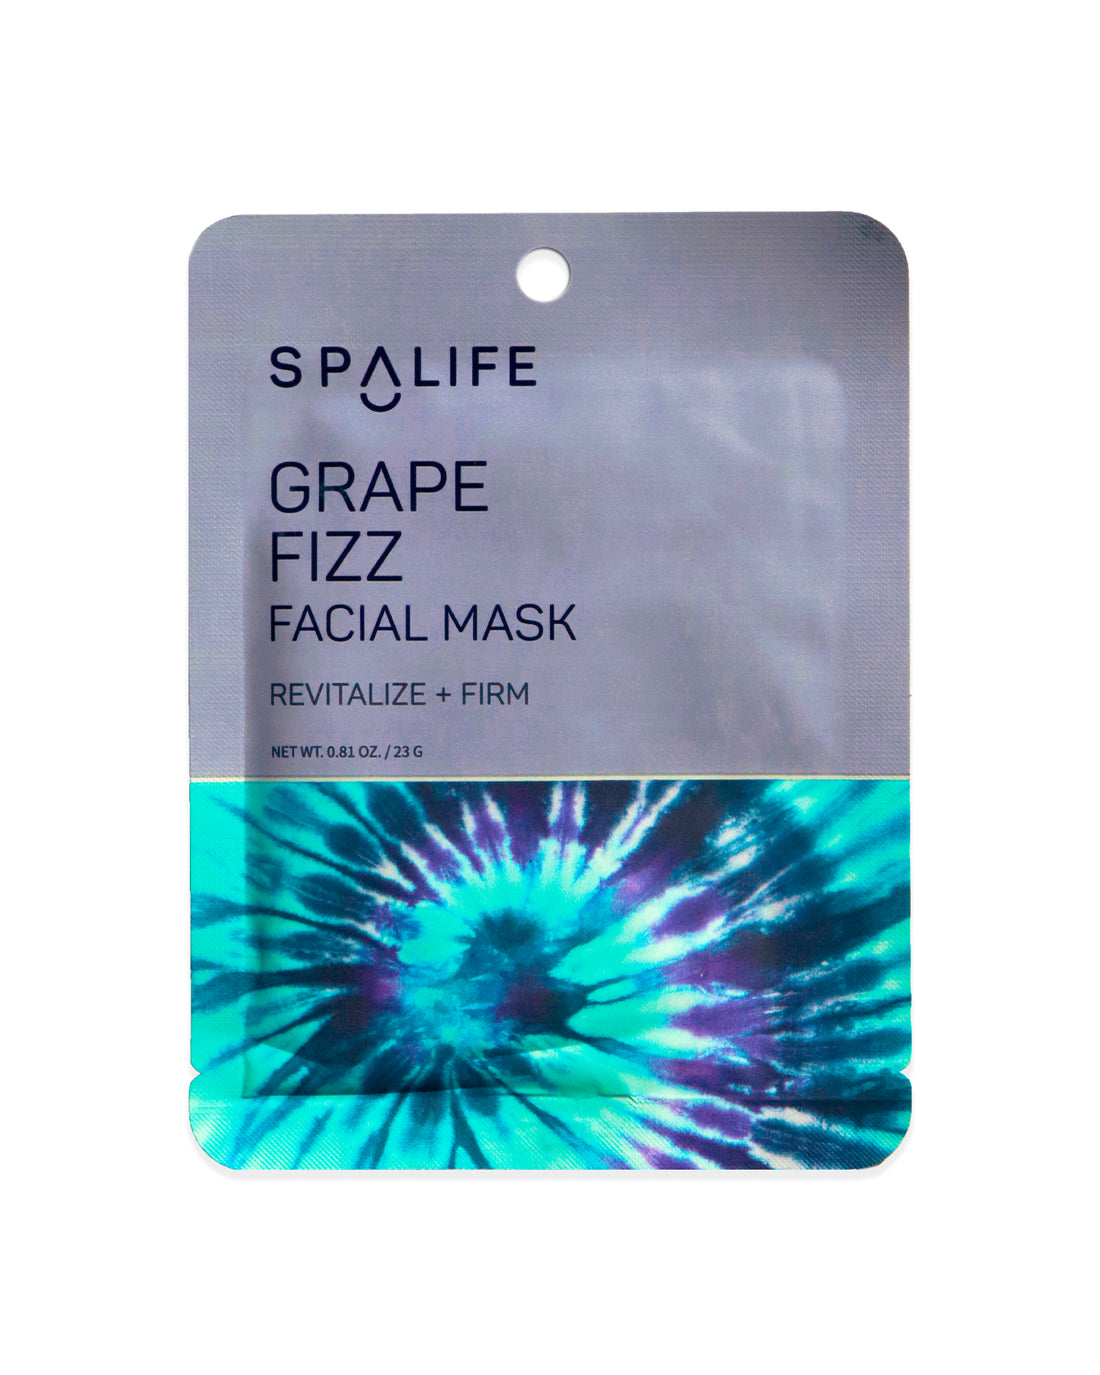 Grape_fizz_facial_mask_packet-354